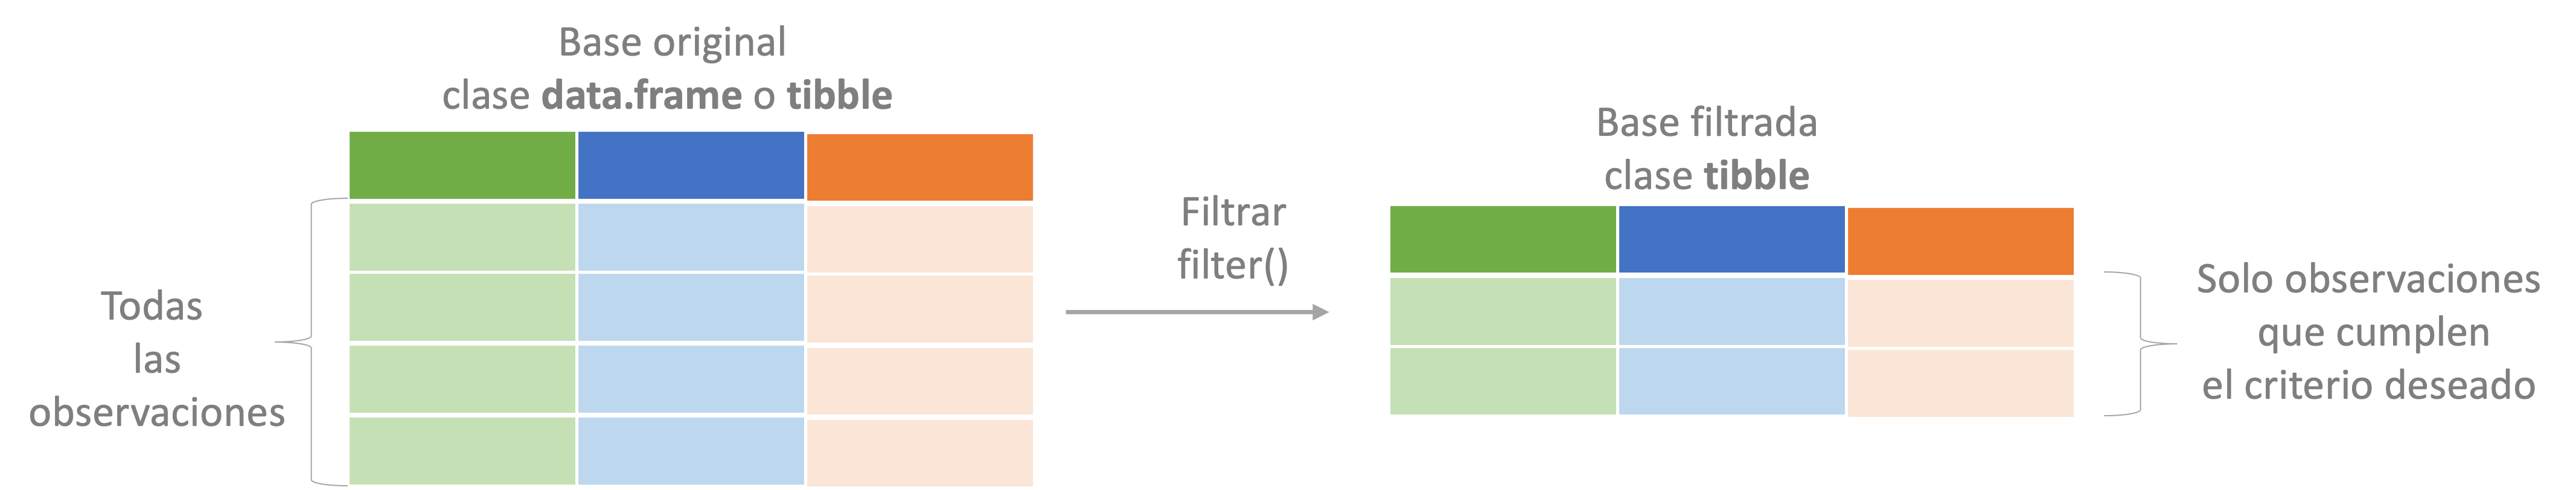 Representación del proceso de filtrar